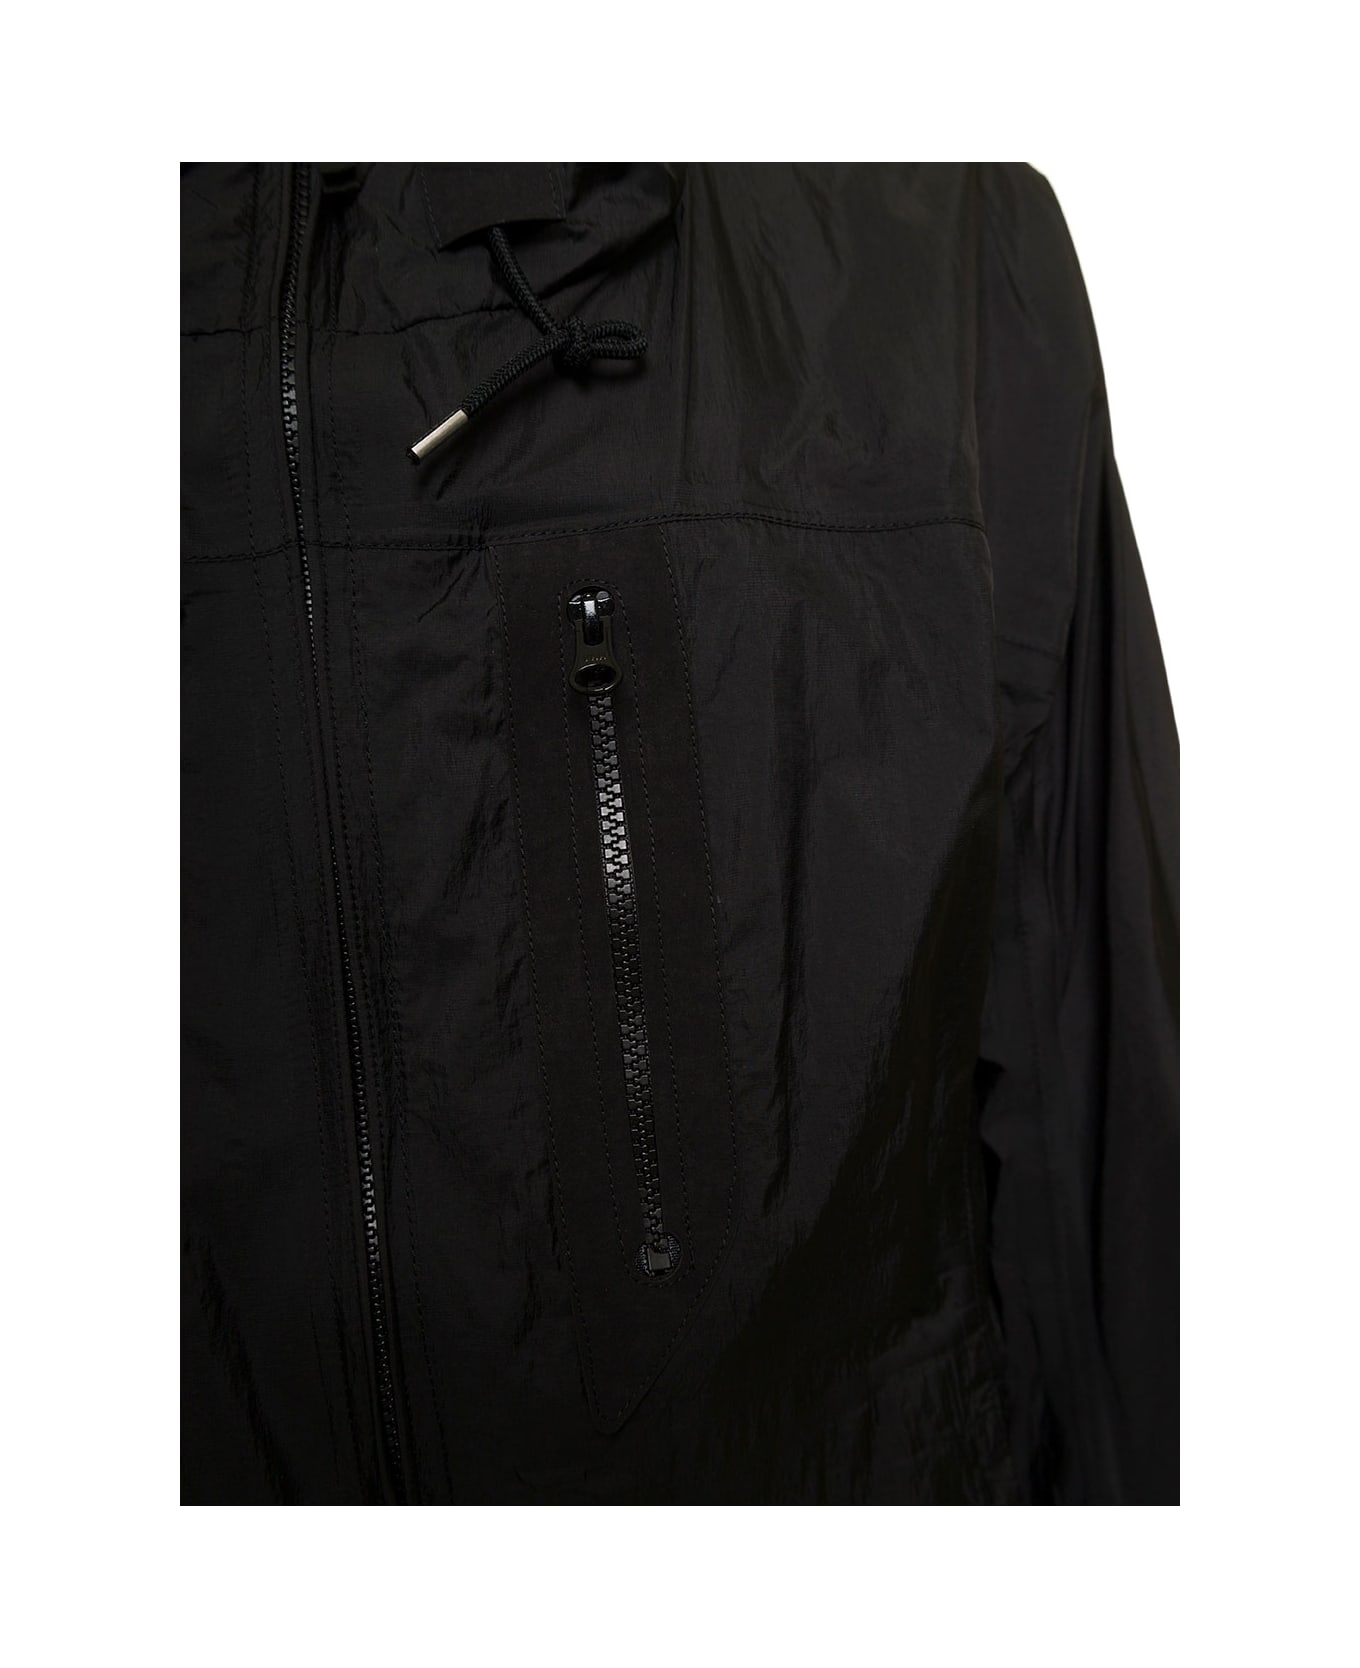 Ten C Men's Black Nylon Hooded Jacket - BLACK